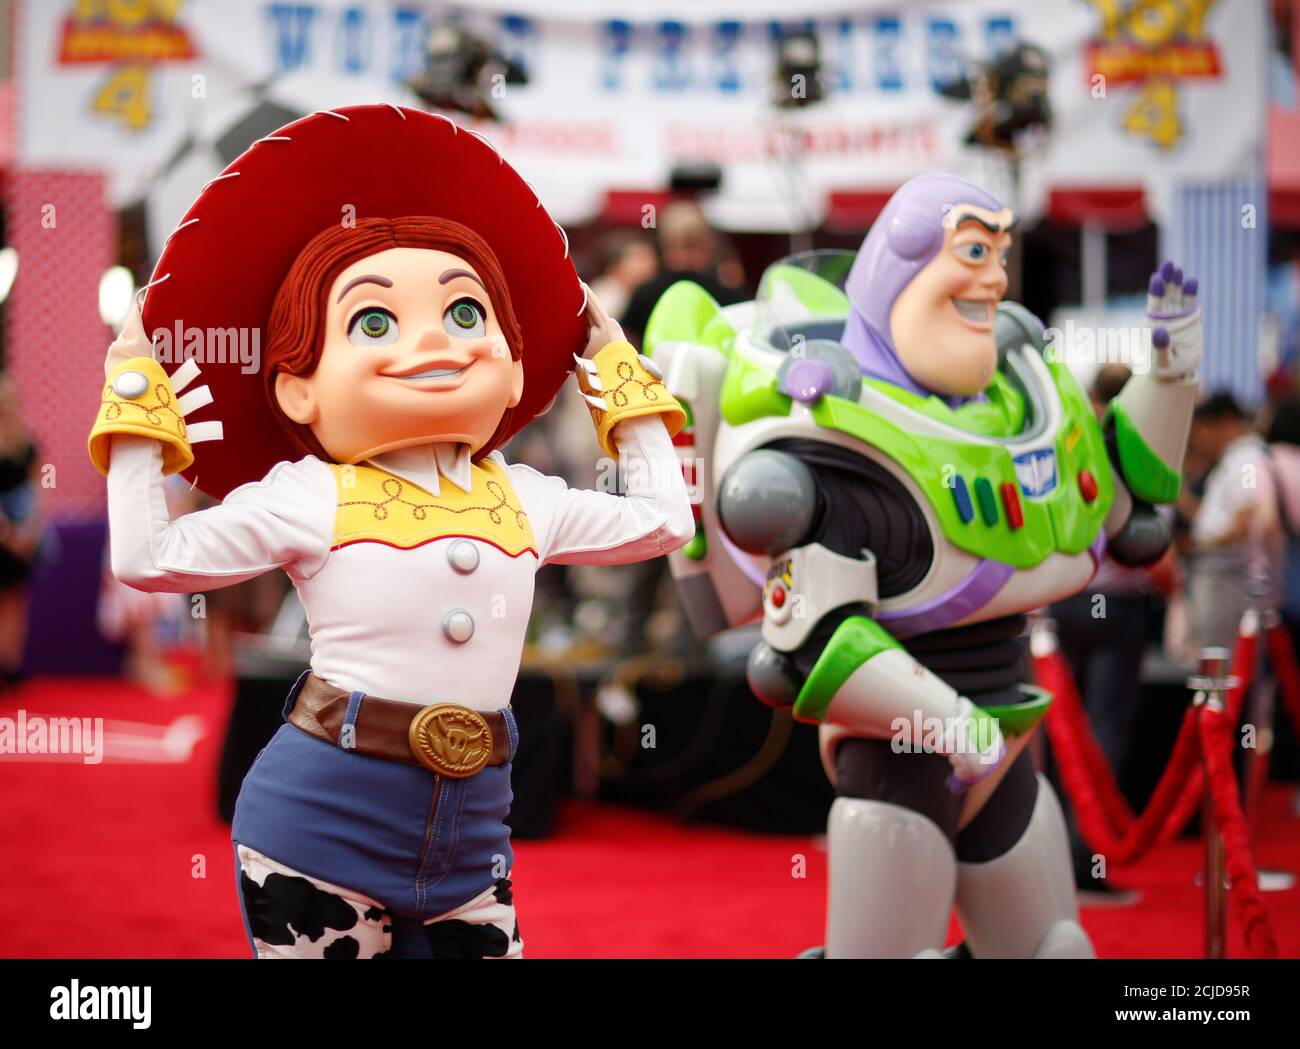 Personas disfrazadas como Jessie y Buzz Lightyear son vistas en el estreno  para 'Toy Story 4' en los Angeles, California, EE.UU., 11 de junio de 2019.  REUTERS/Mario Anzuoni Fotografía de stock -